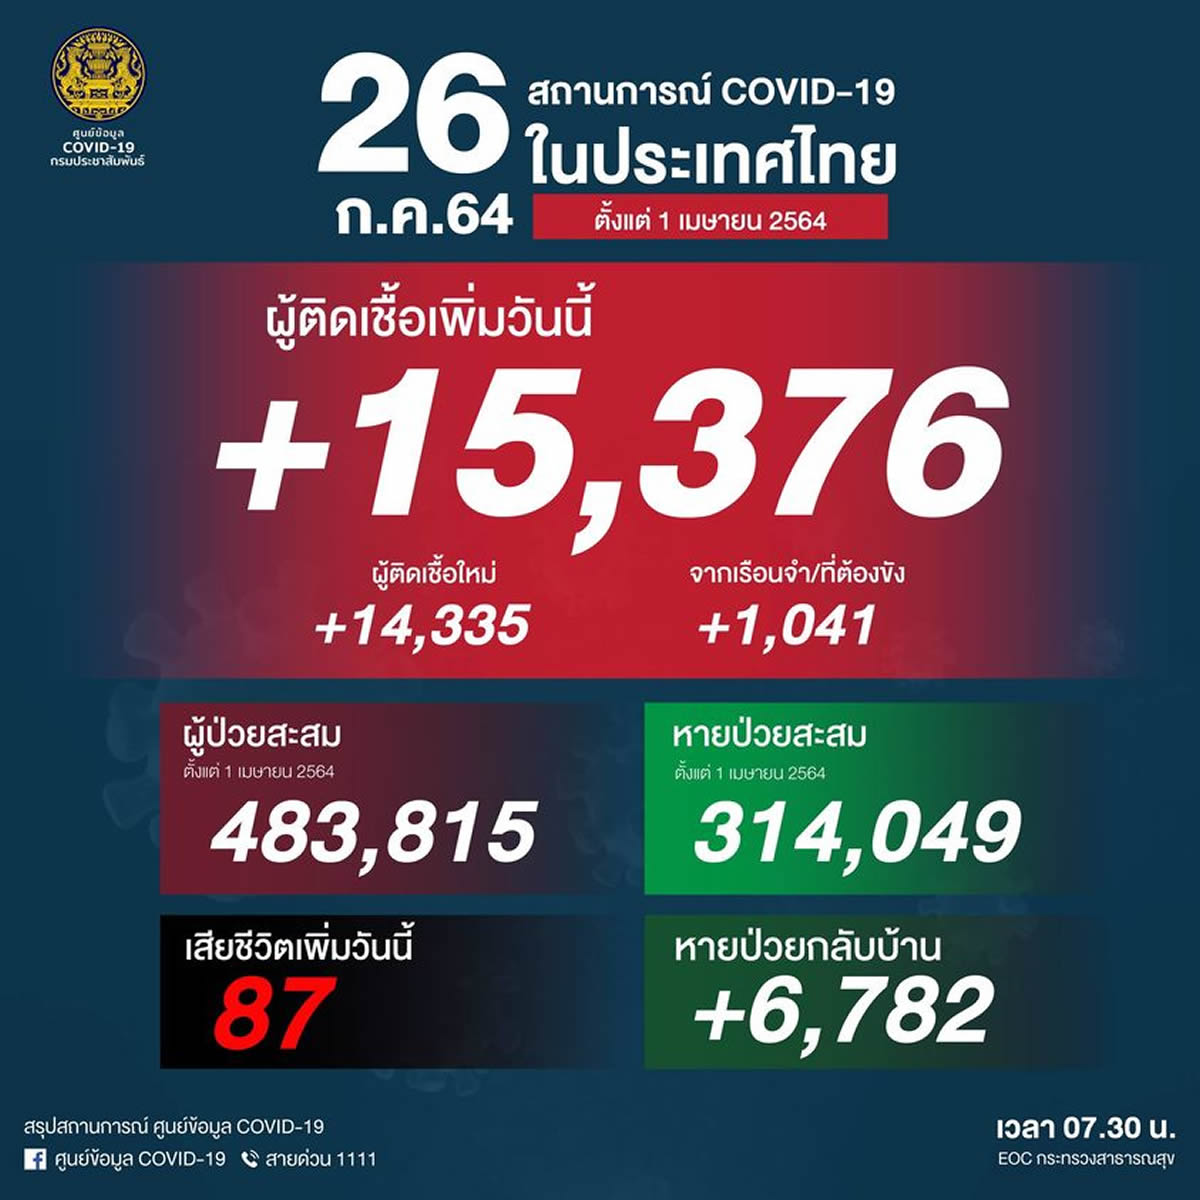 タイ 15,376人陽性（刑務所1,041人）、87人死亡［2021/7/26］